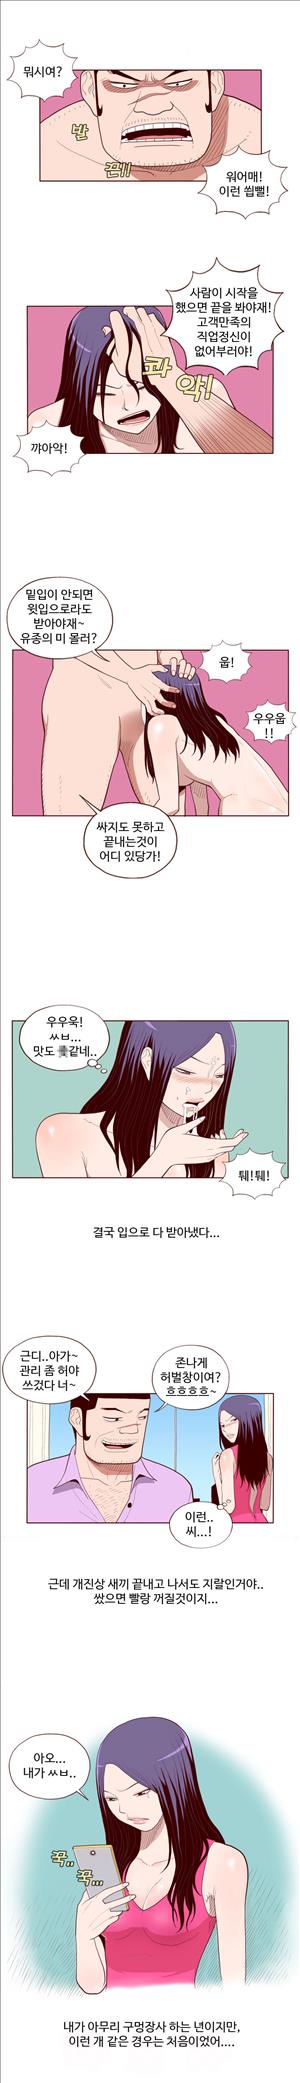 미색 - 썰만화 시즌4 51화 - 오피녀의 비밀(중)_4